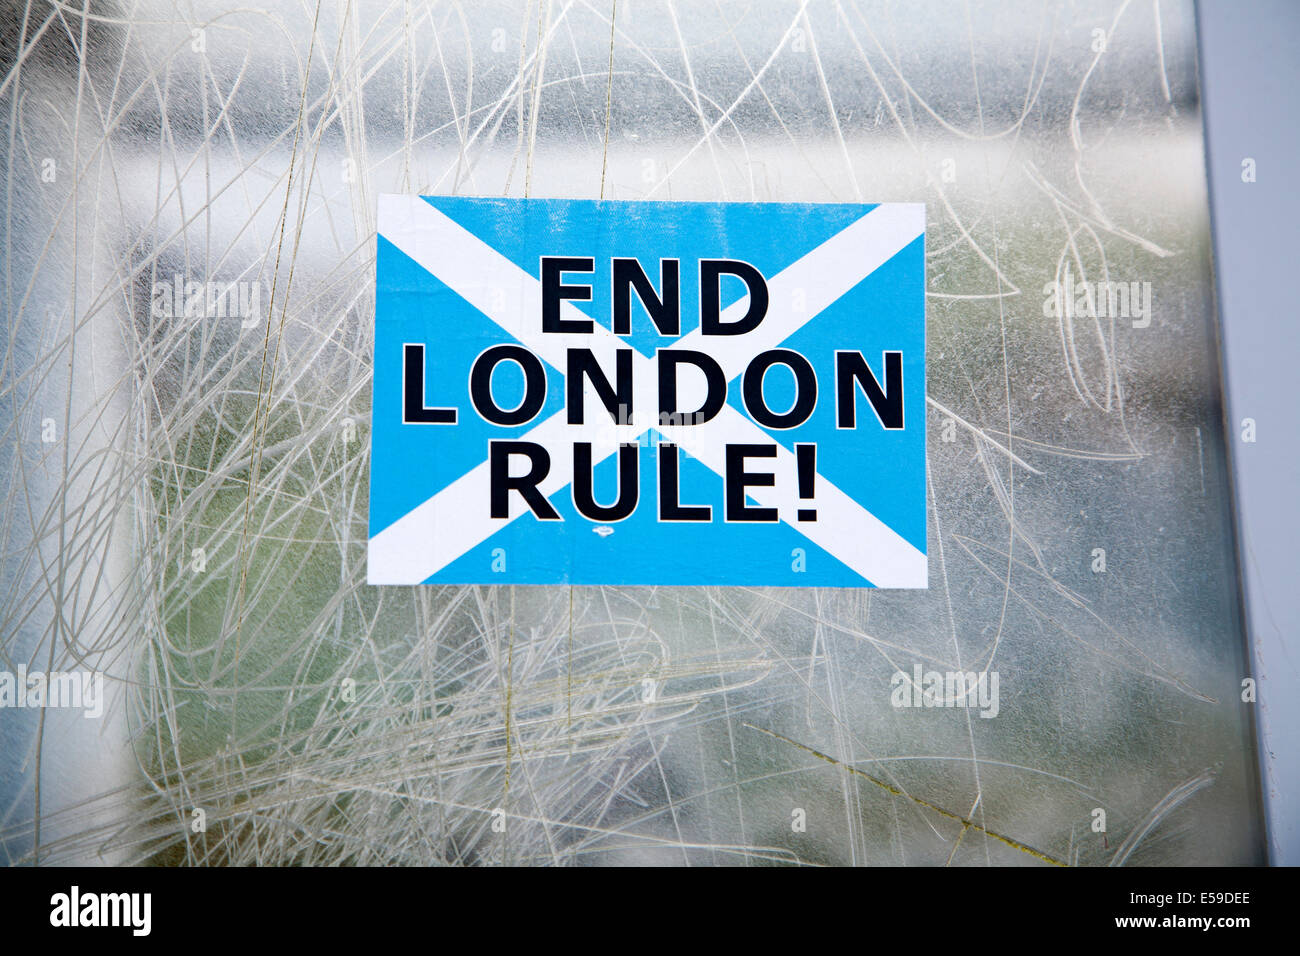 L'indépendance écossaise poster autocollant disant 'Règle' Ecosse Londres fin Banque D'Images